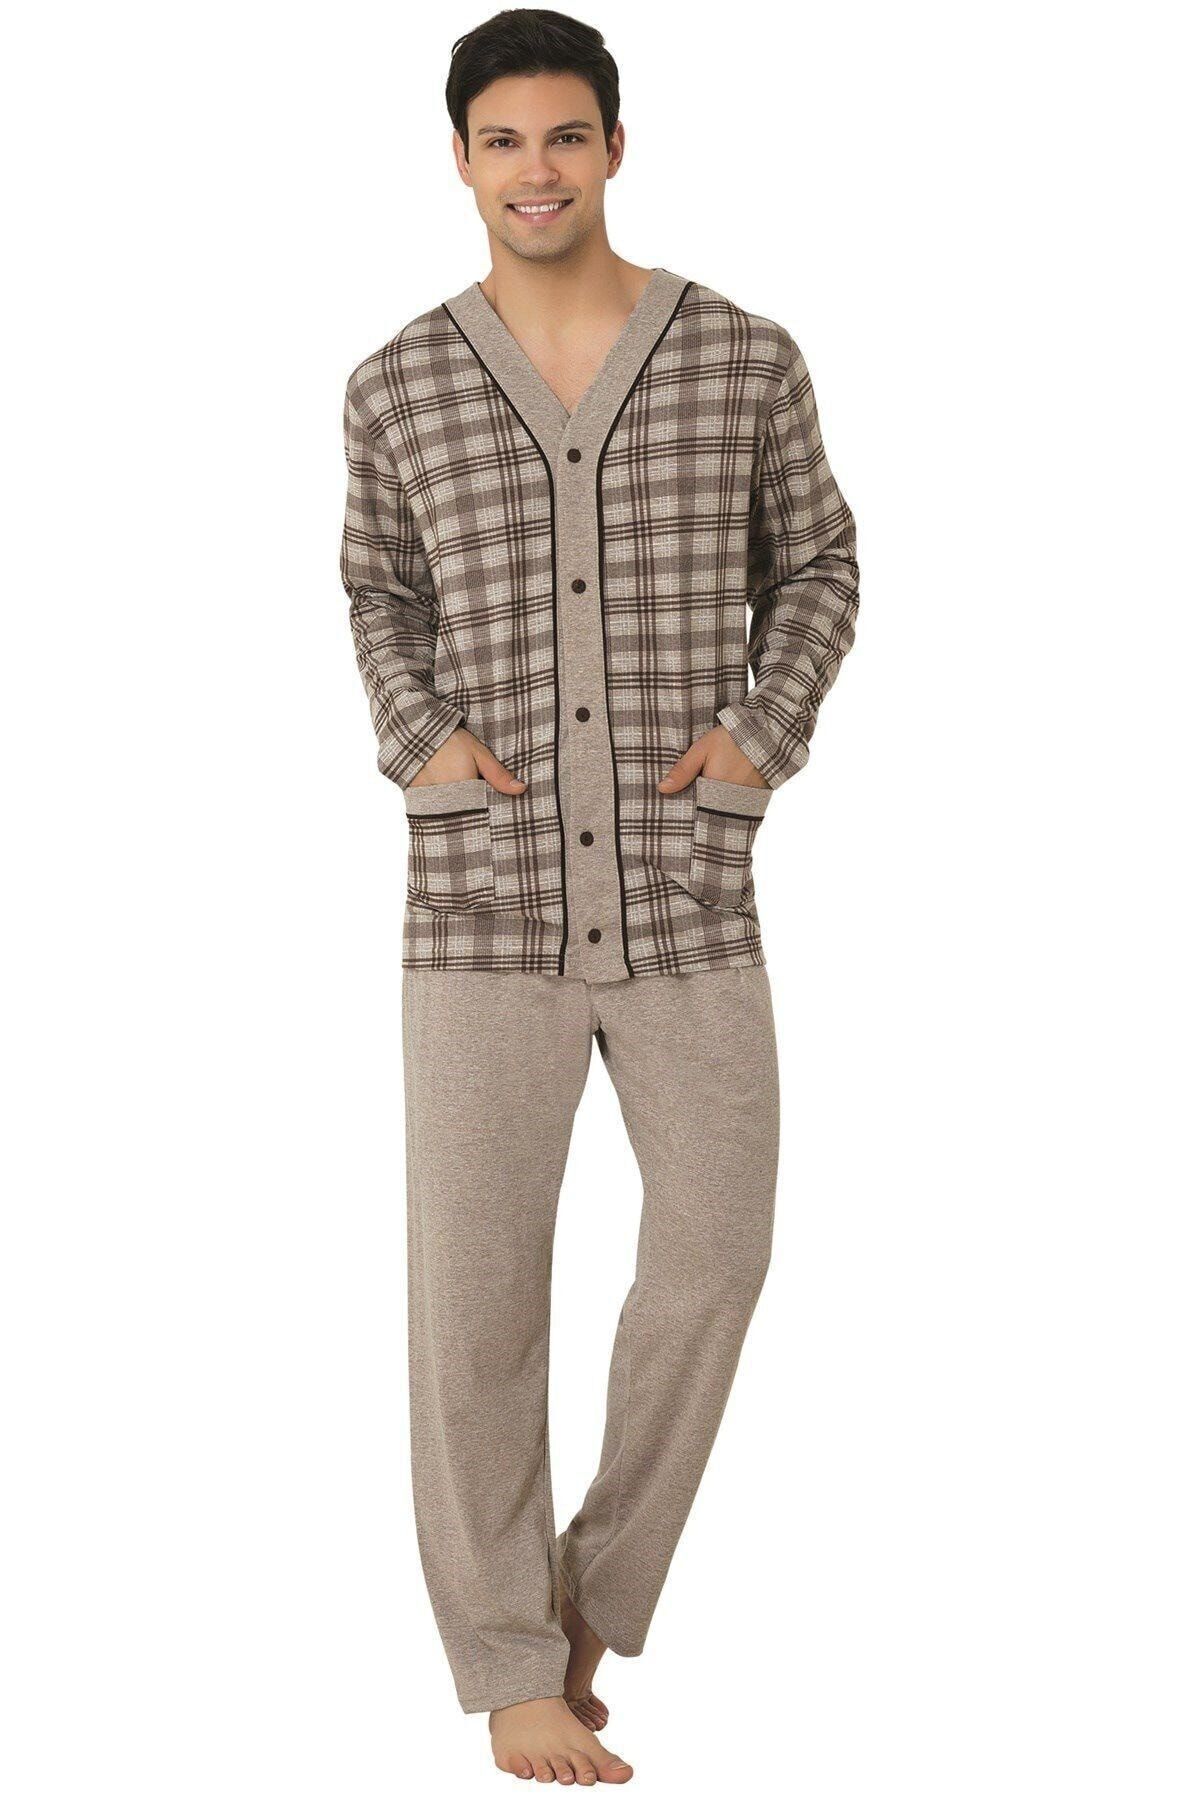 Mecit Pijama 2710 Büyük Beden Erkek Pijama Takımı -kahverengi